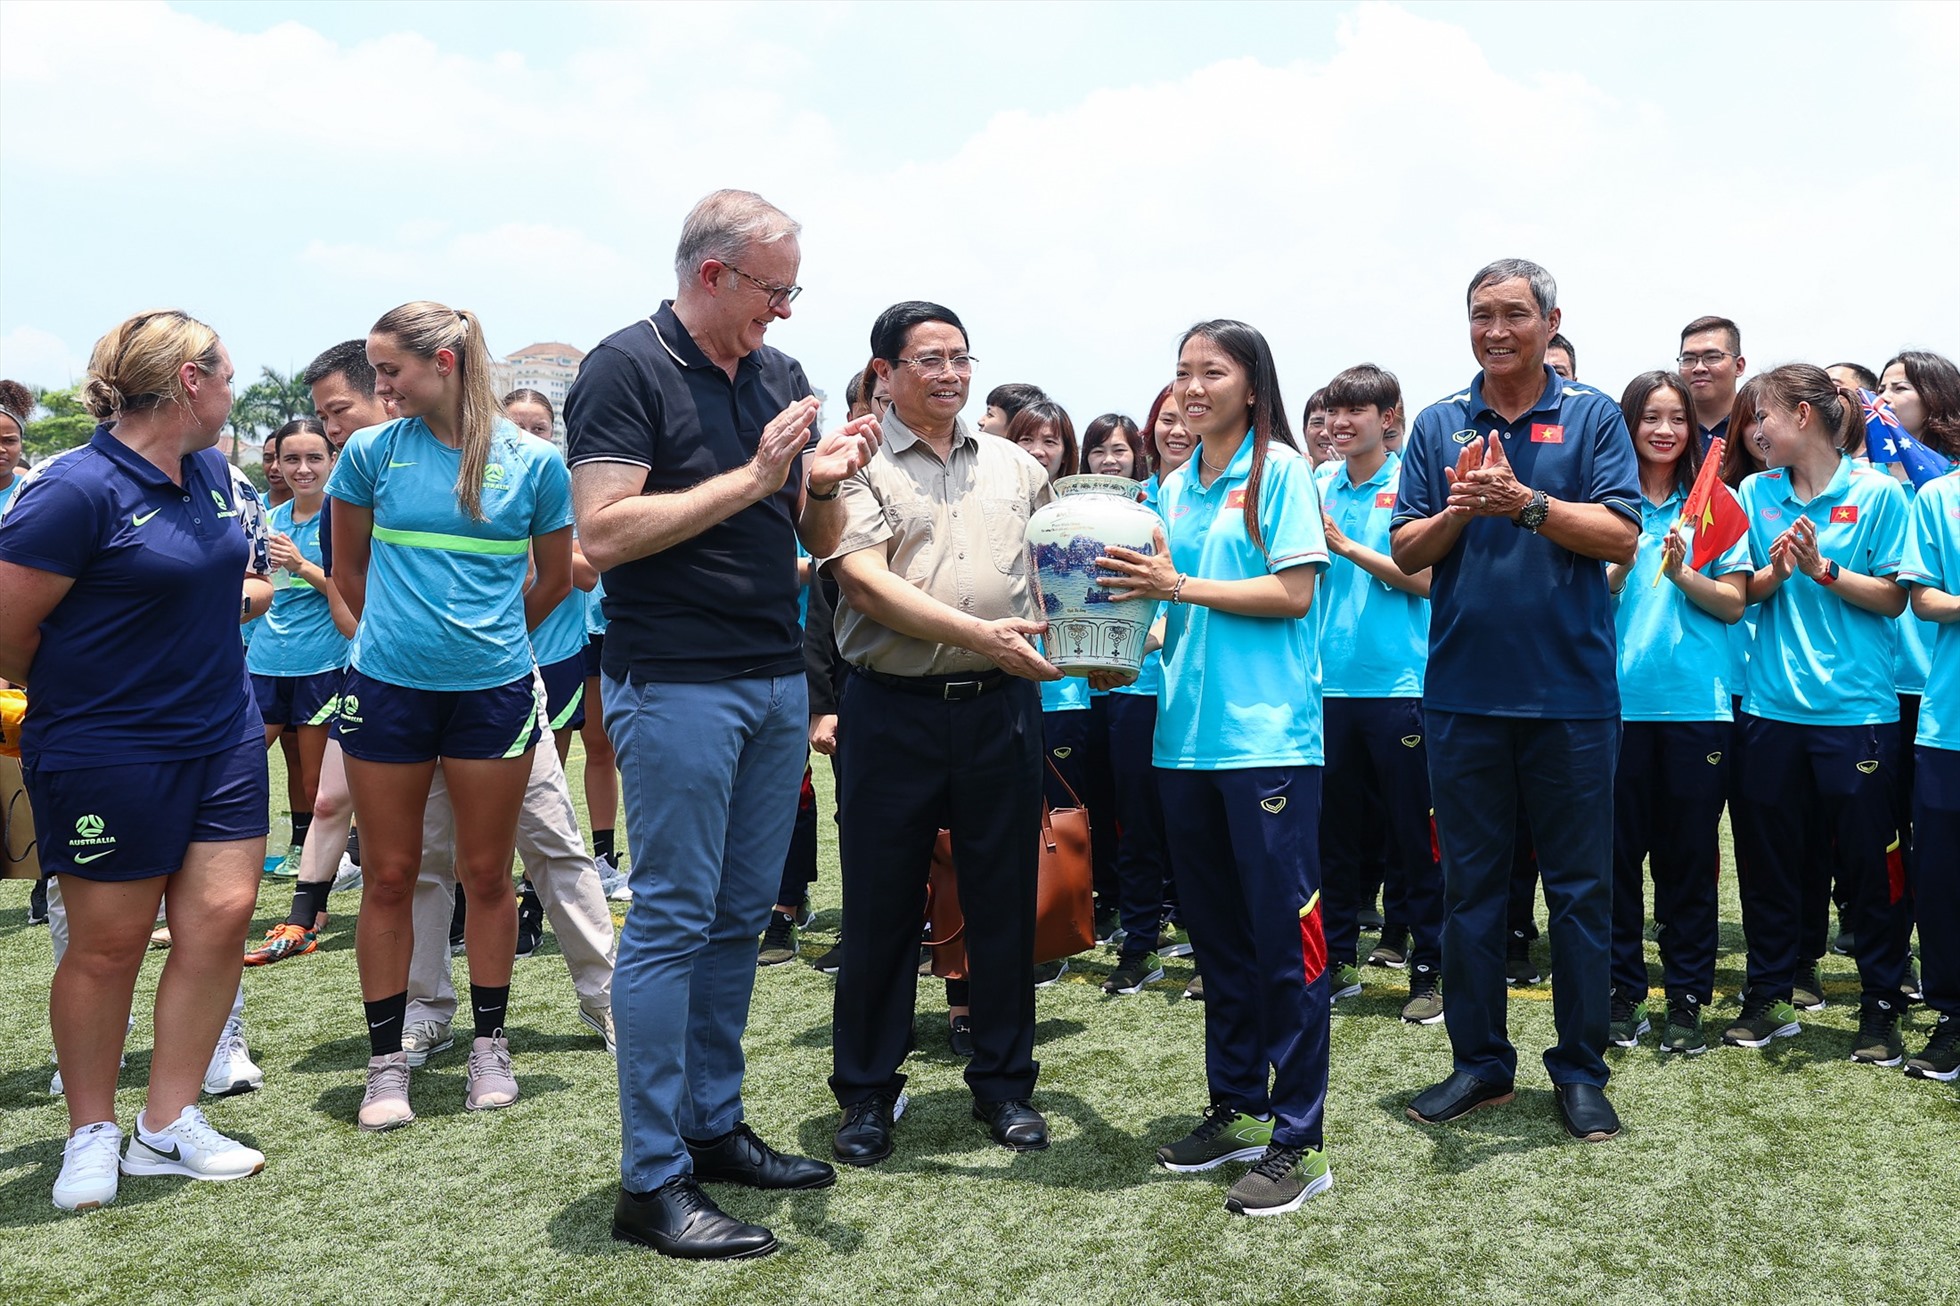 Gặp gỡ các cầu thủ, hai Thủ tướng đã lắng nghe kinh nghiệm của họ trong vai trò cầu thủ bóng đá nữ và những thách thức mà họ đã và đang phải đối mặt để đạt được giấc mơ của mình trong môn thể thao này. Ảnh: Hải Nguyễn